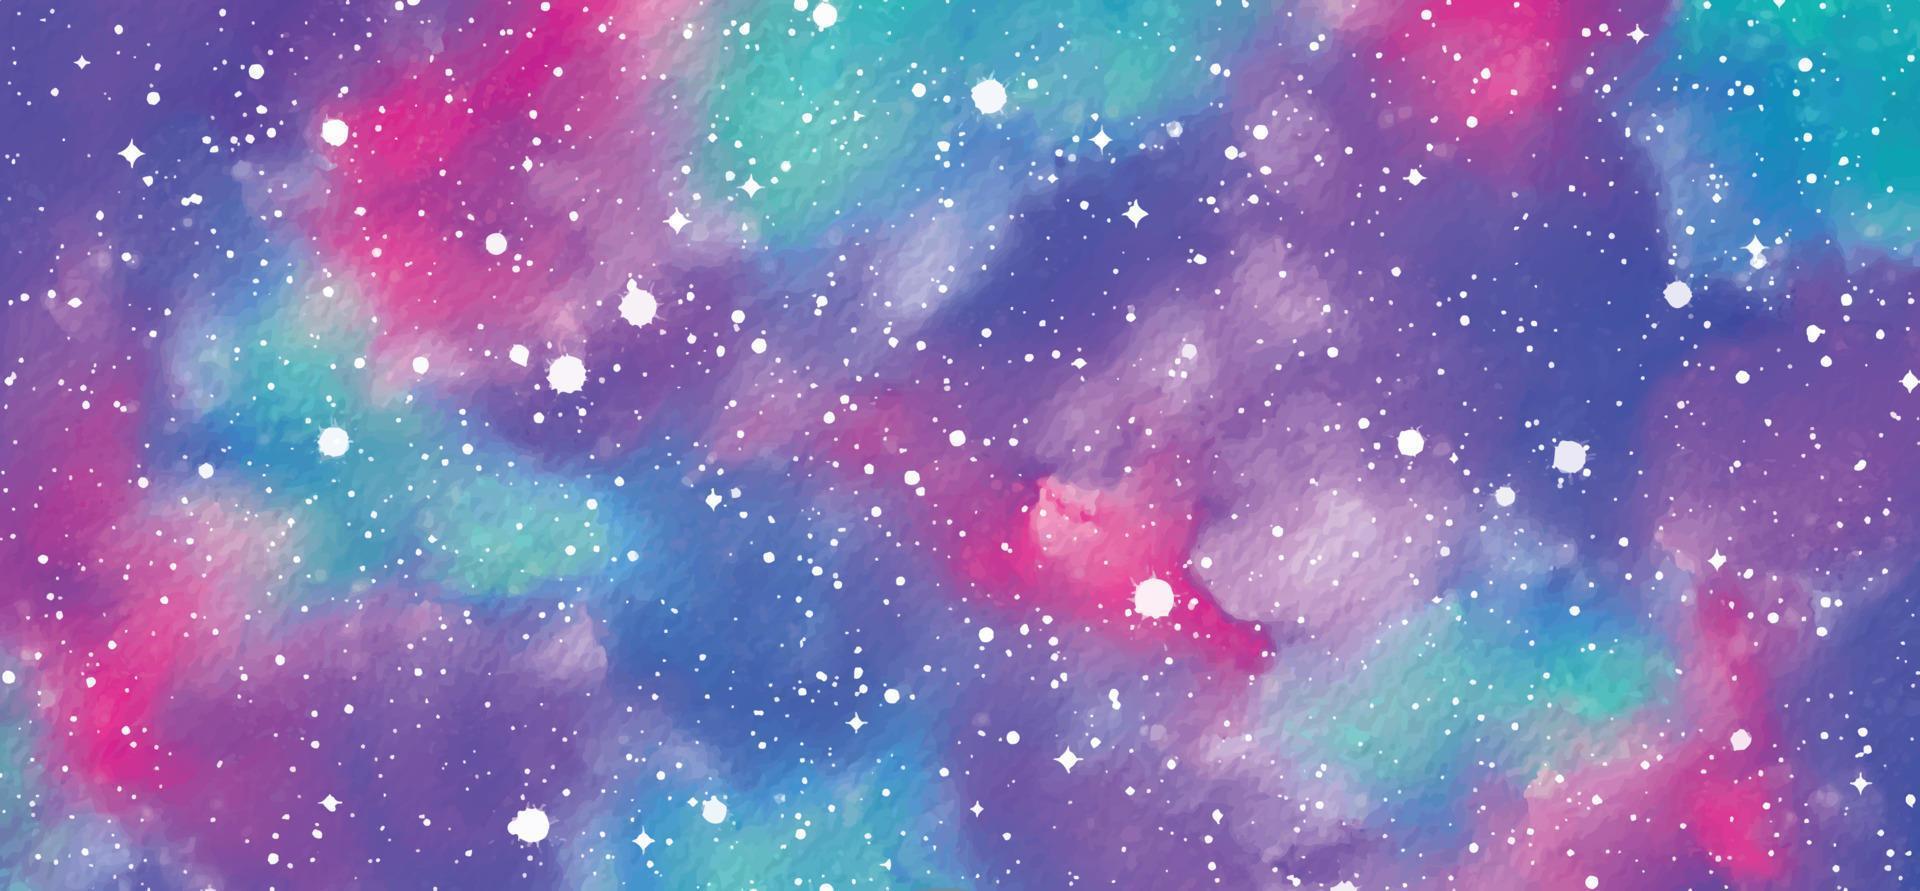 Watercolor galaxy background vector